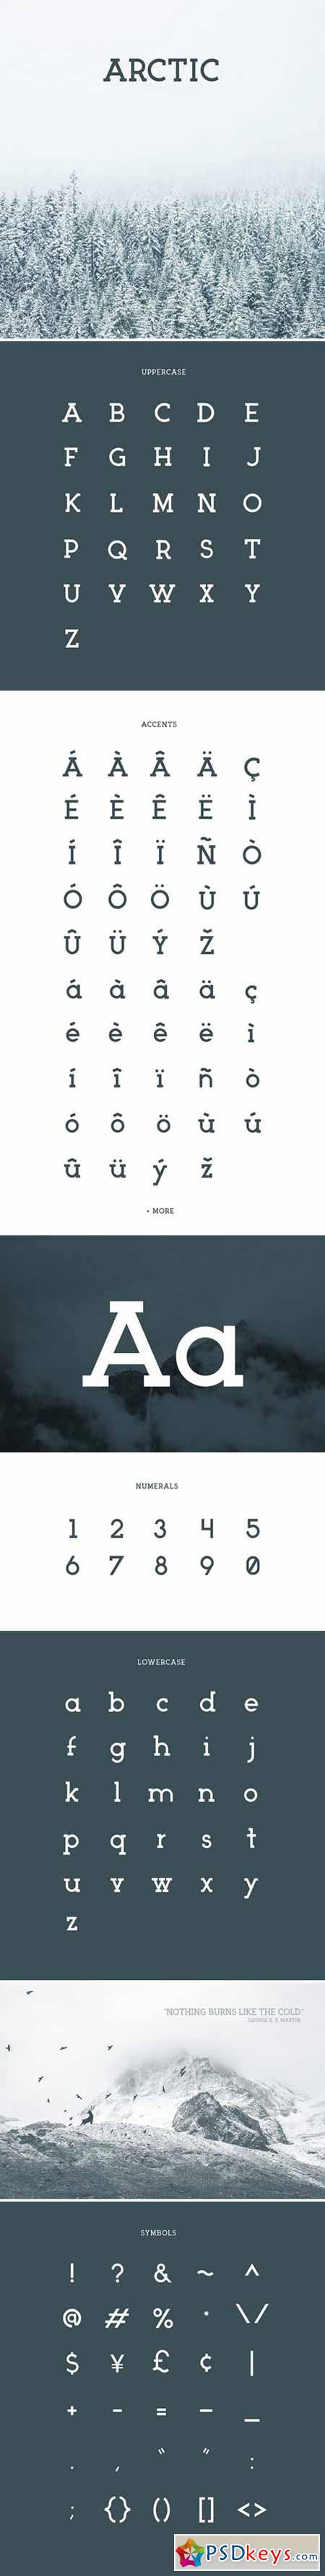 ARCTIC Typeface